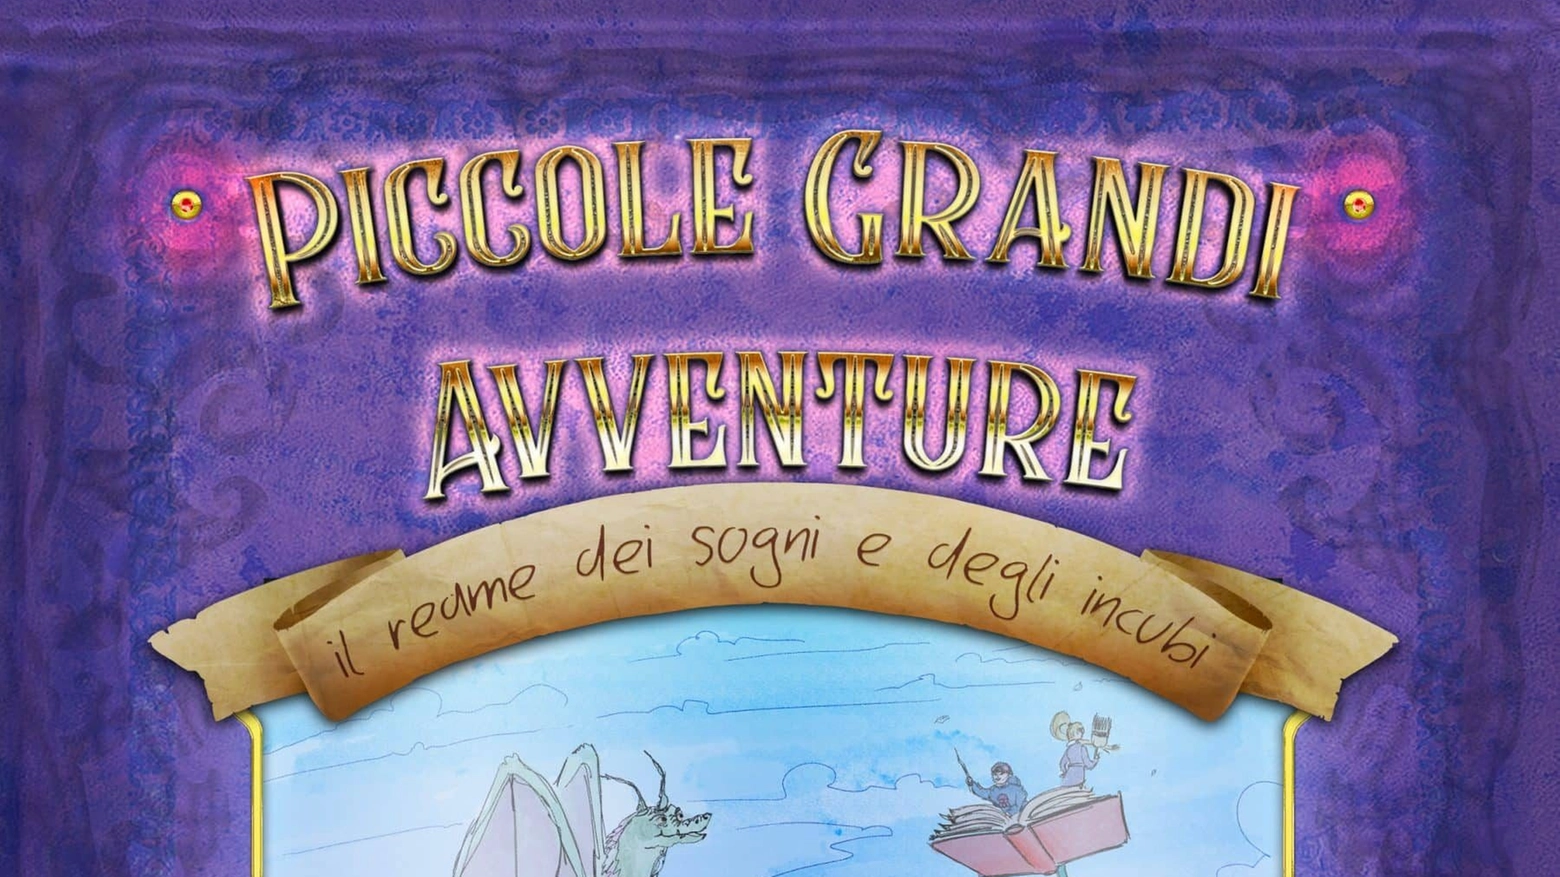 In anteprima nazionale a Lucca, sarà presentato il gioco "Piccole grandi avventure" ideato per favorire l'apprendimento e accompagnare le fragilità educative